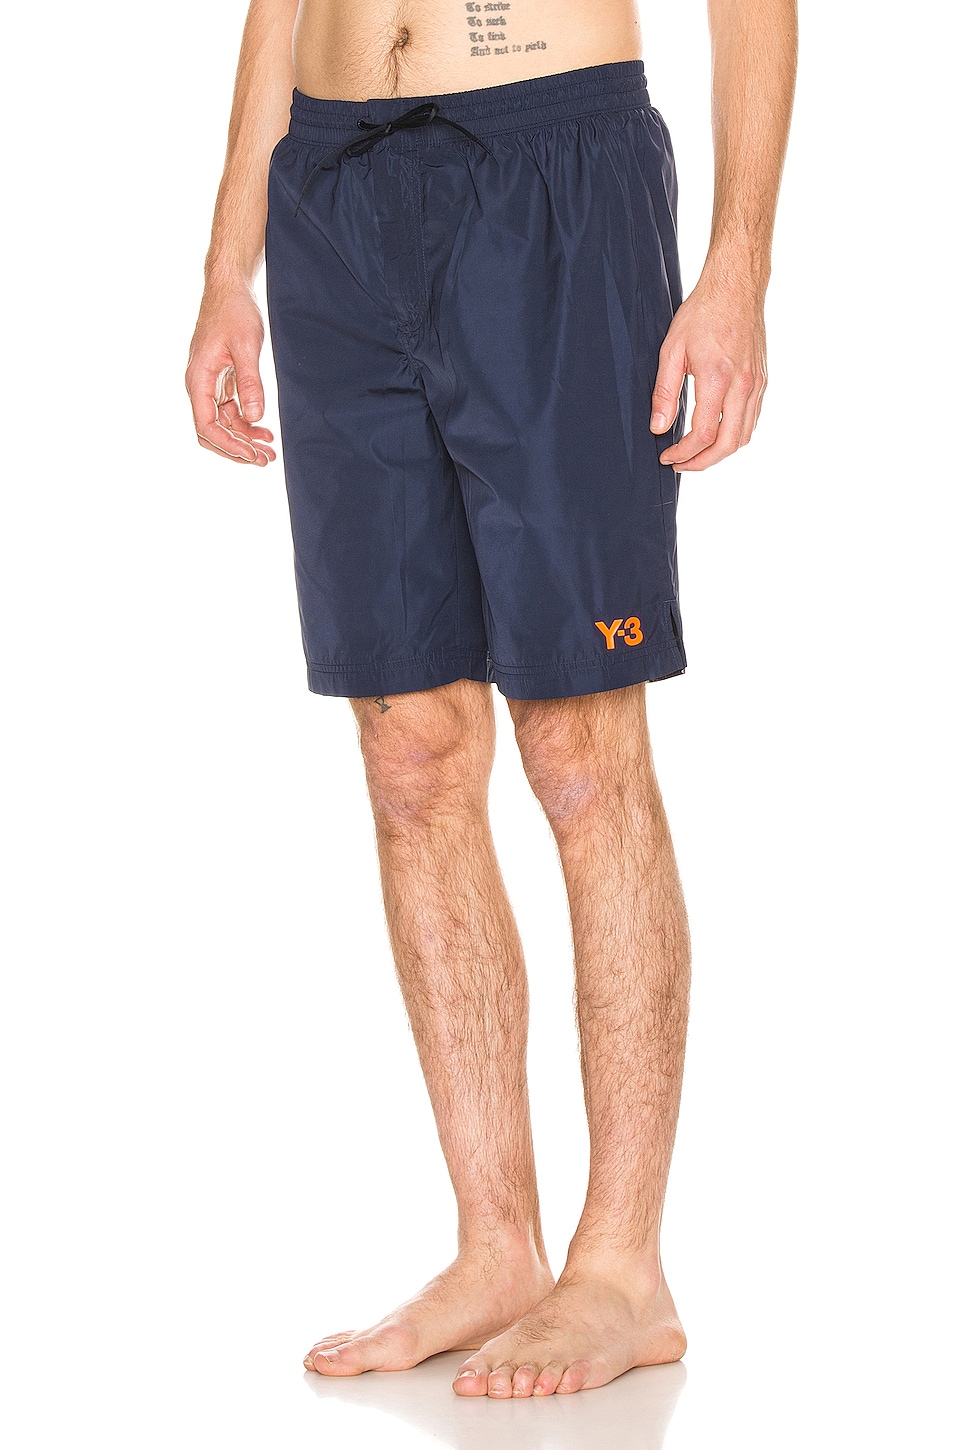 y3 shorts mens